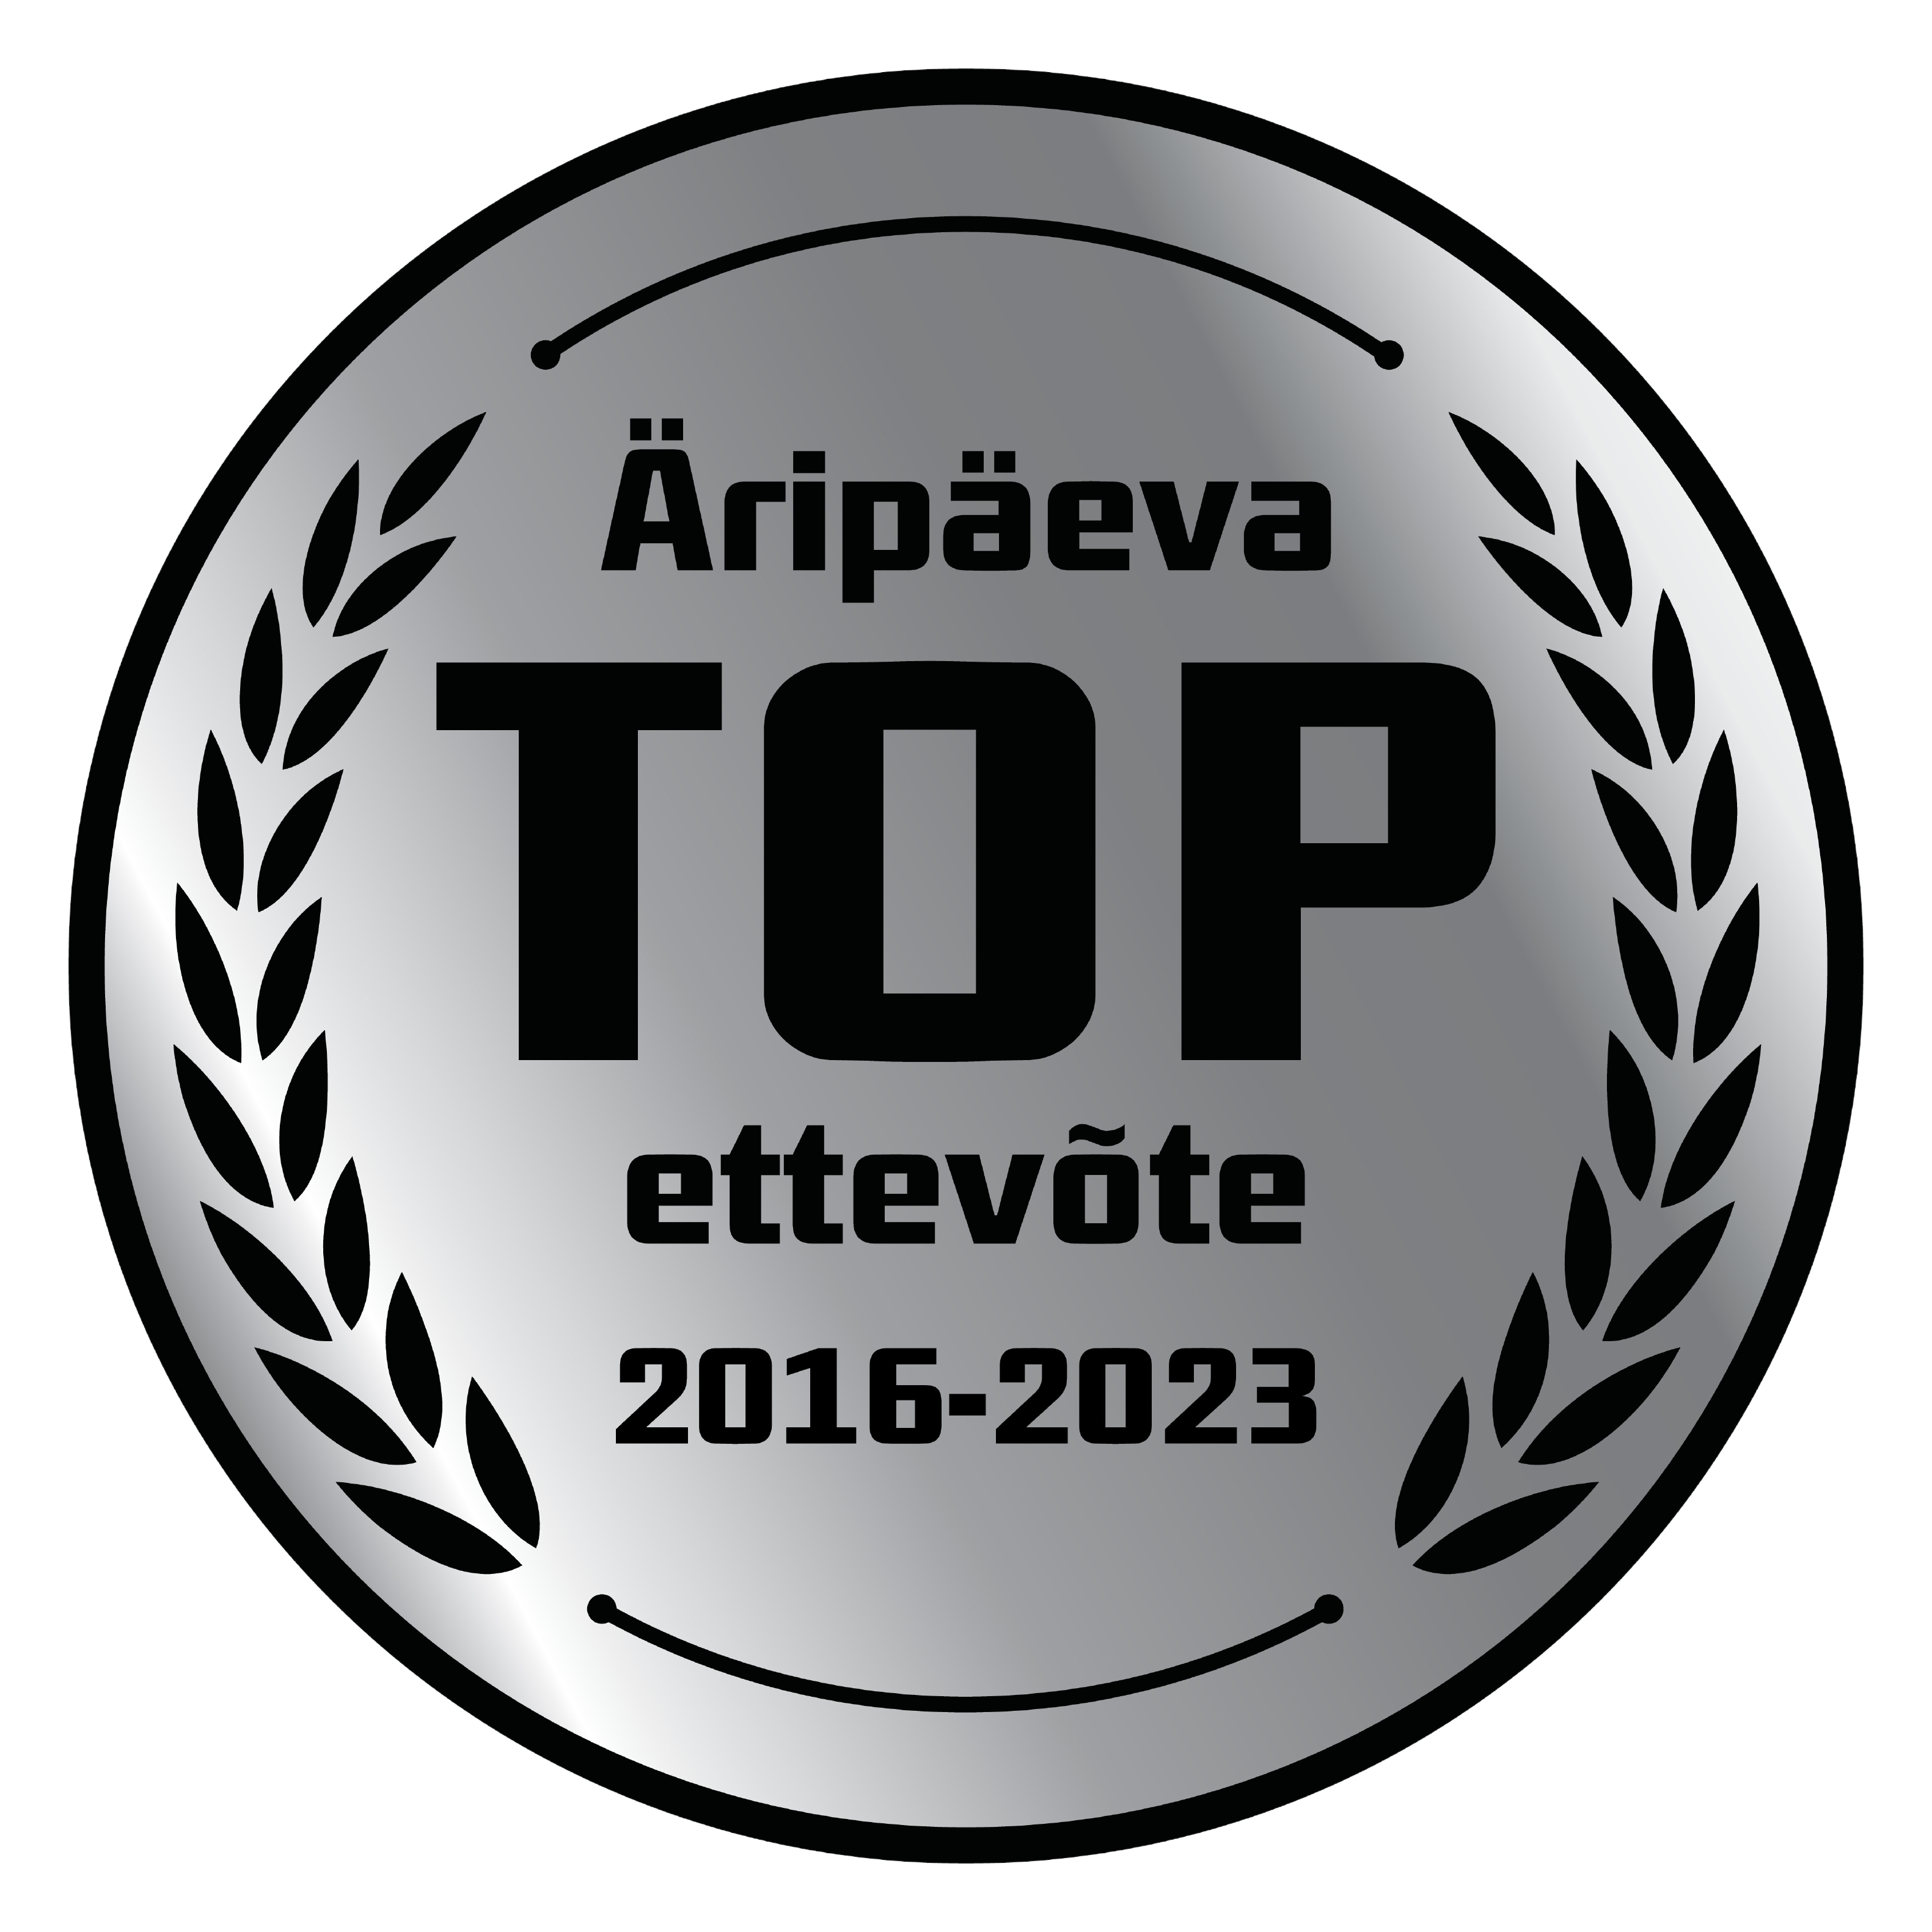 Äripäeva TOP ettevõte 2016-2023